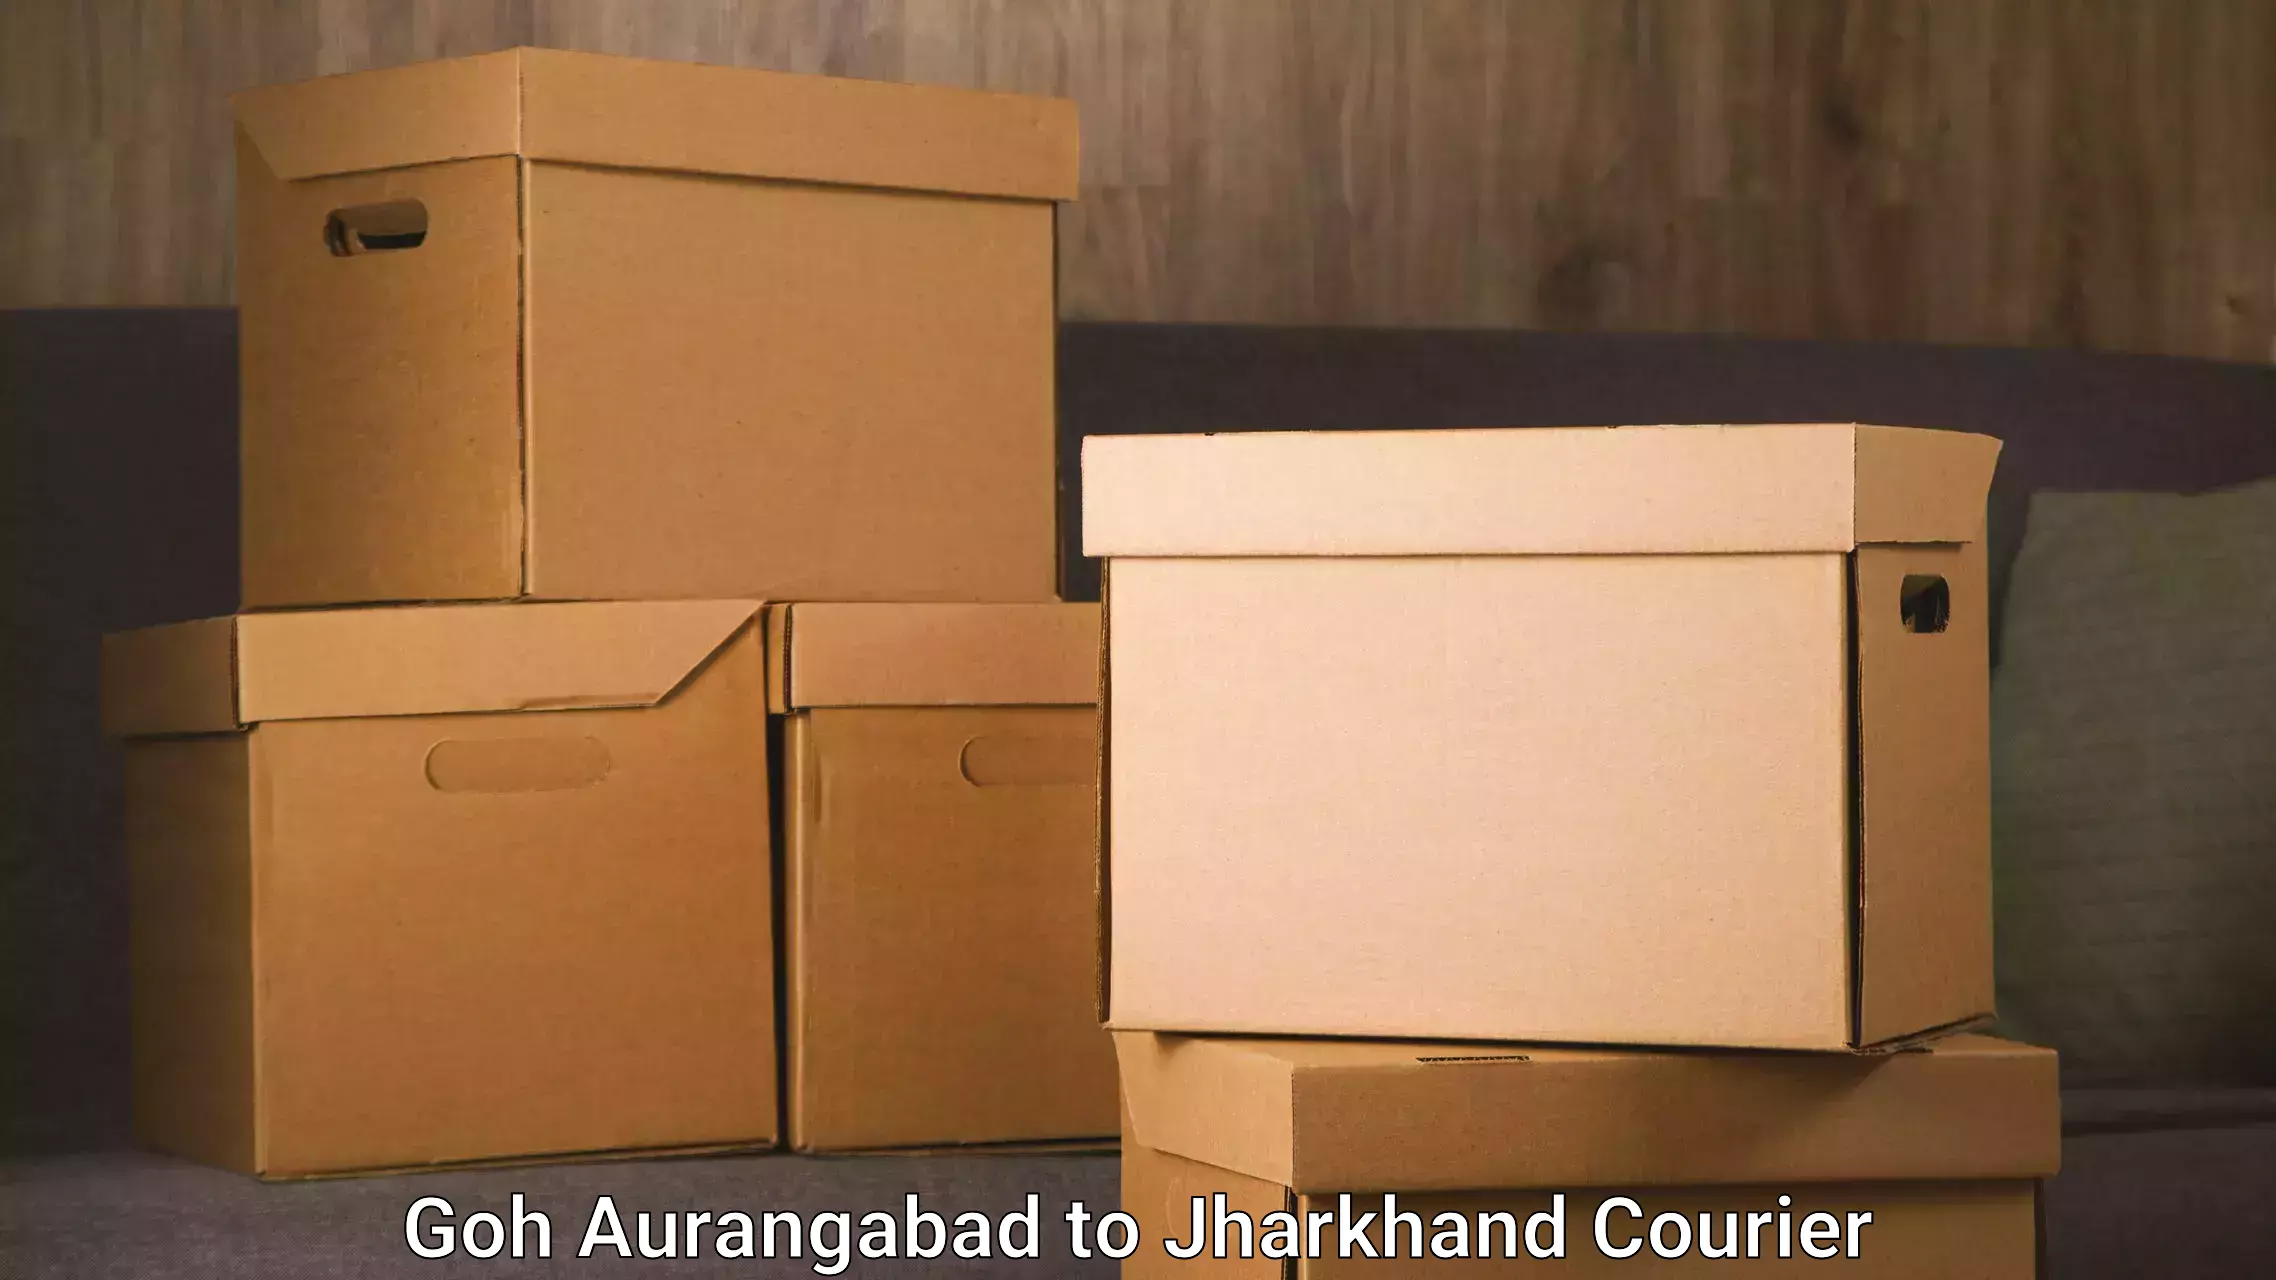 Furniture transport company Goh Aurangabad to Lohardaga